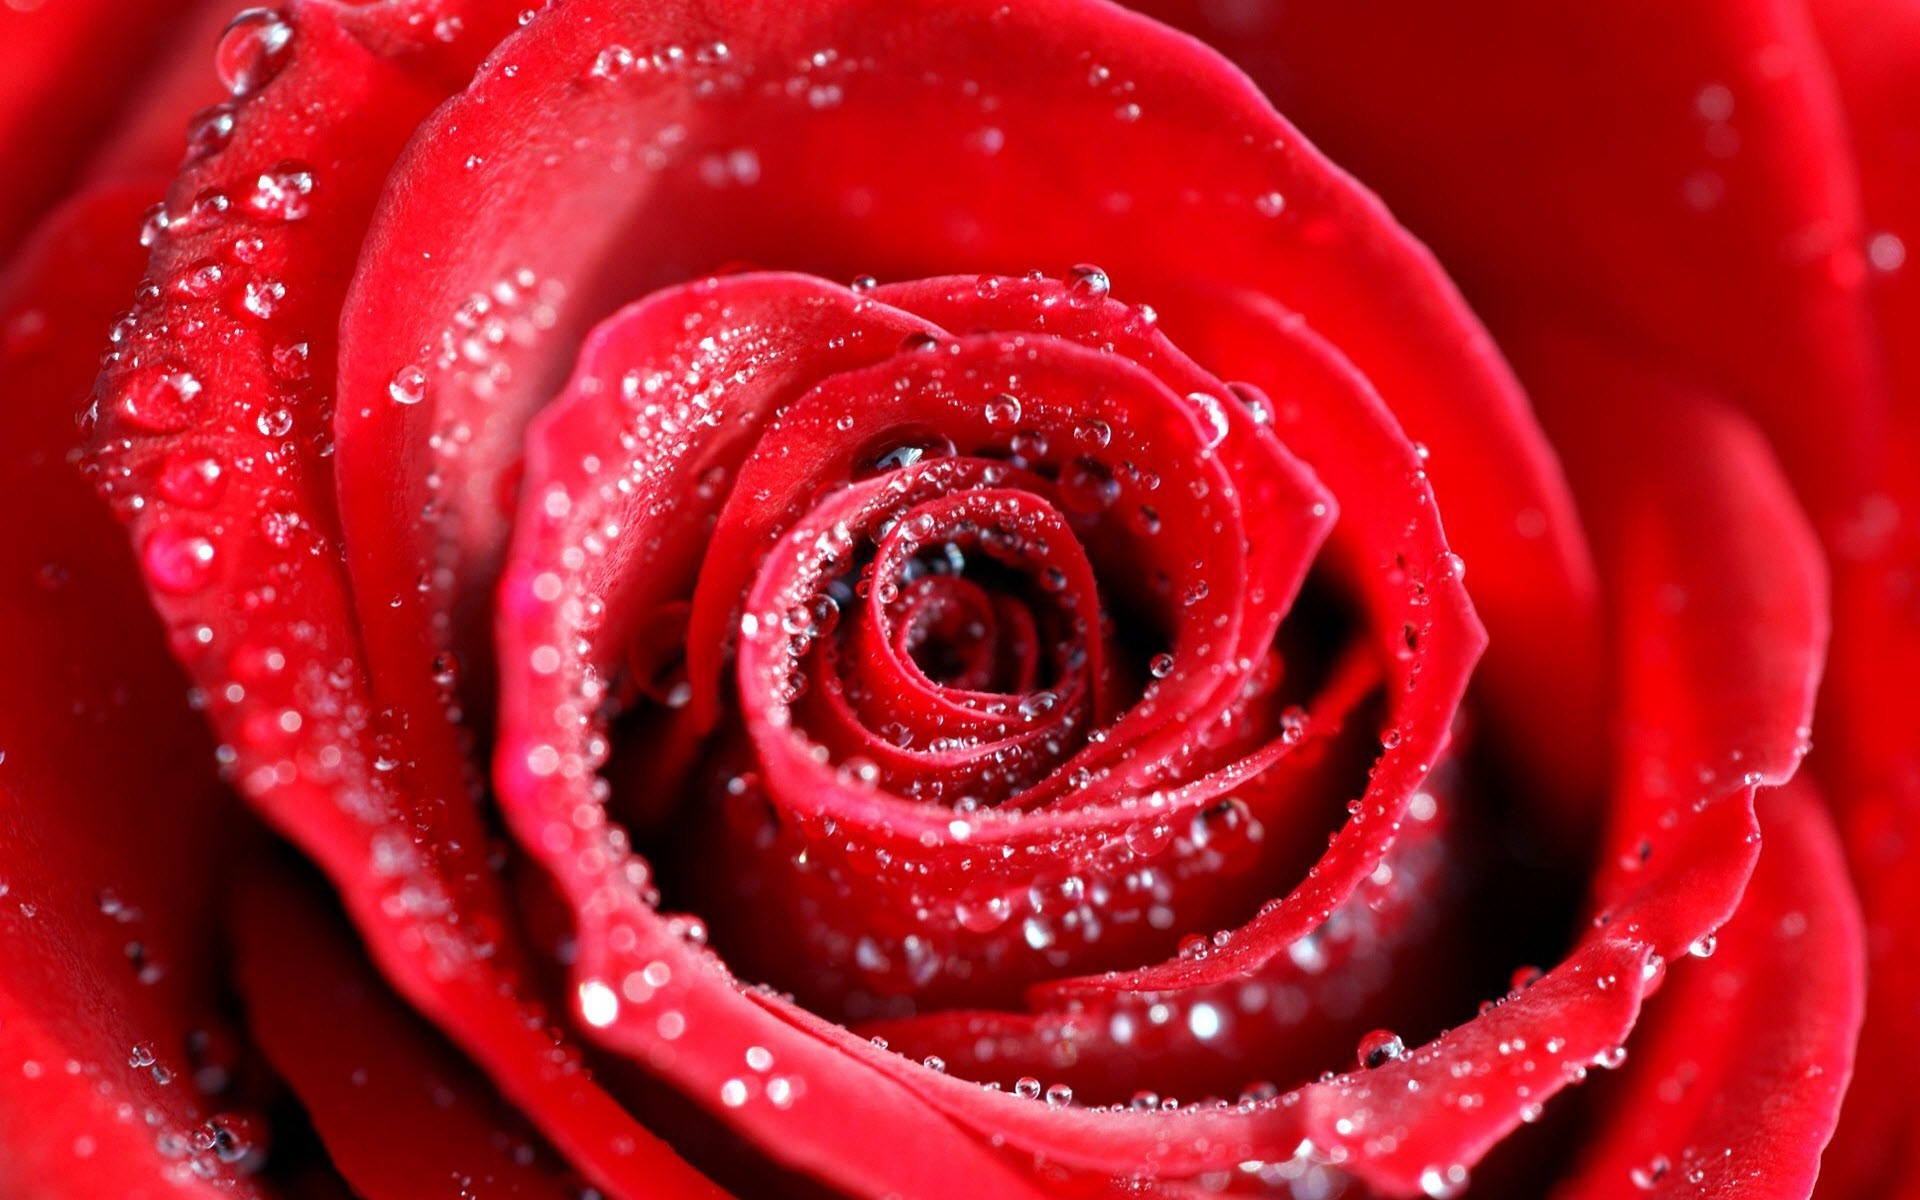 water rose hd wallpaper,rose,garden roses,red,petal,water